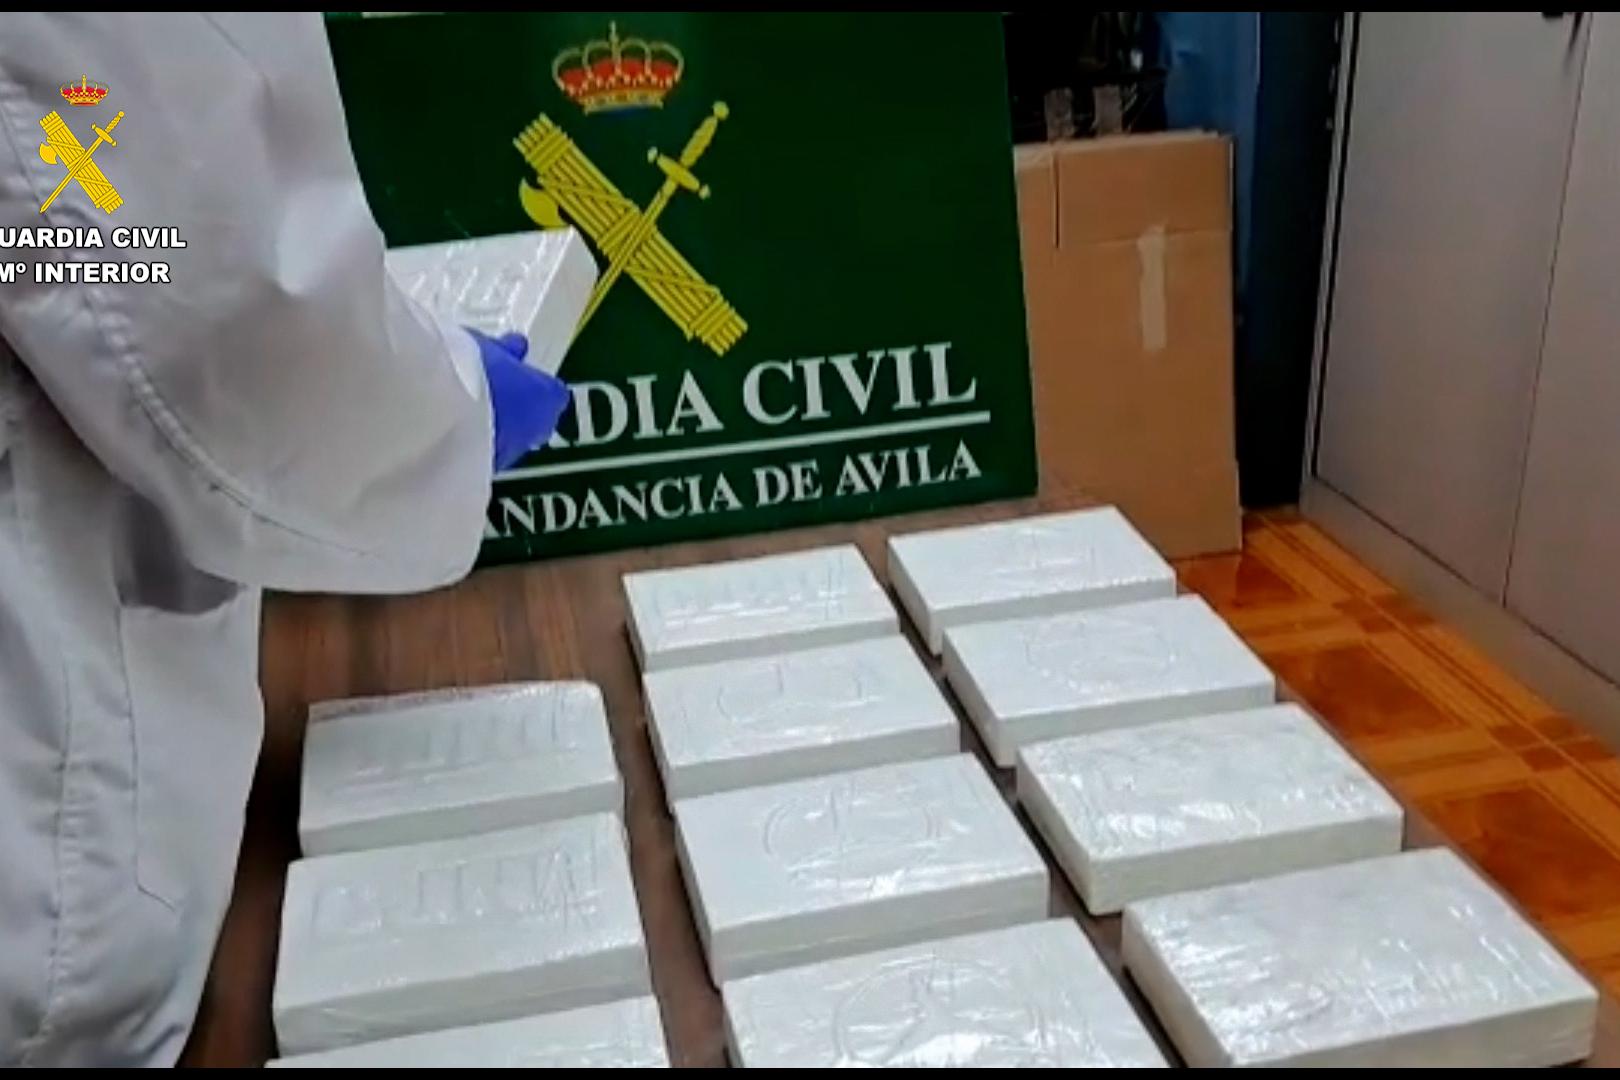 Imagen de la Guardia Civil de los 12 kilogramos cocaína, 5 llevaban un sello que podría pertenecer al Cártel de Jalisco Nueva Generación